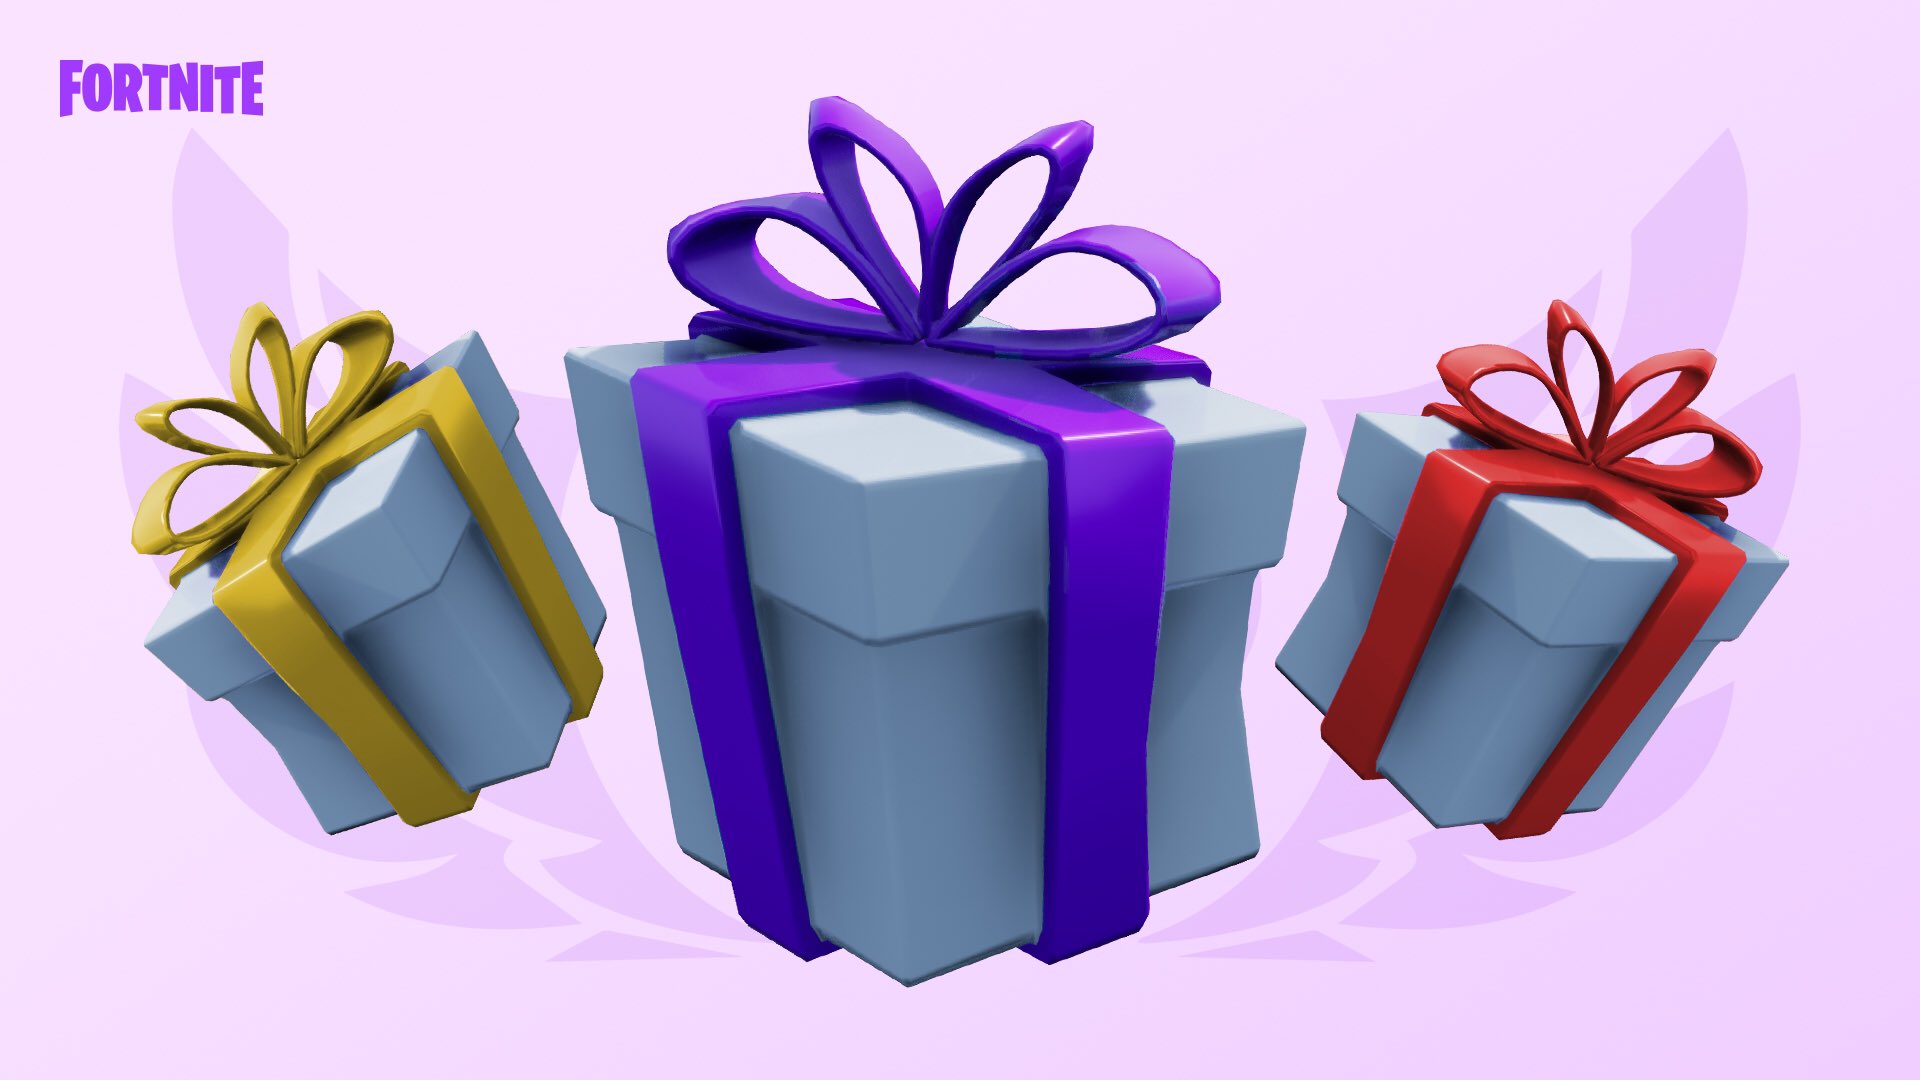 Fortnite Info on Twitter: "Regalos limitado) ¡Los regalos están de vuelta durante tiempo limitado mismo hasta el de febrero! Y, por ser San Valentín, podéis regalar el ala